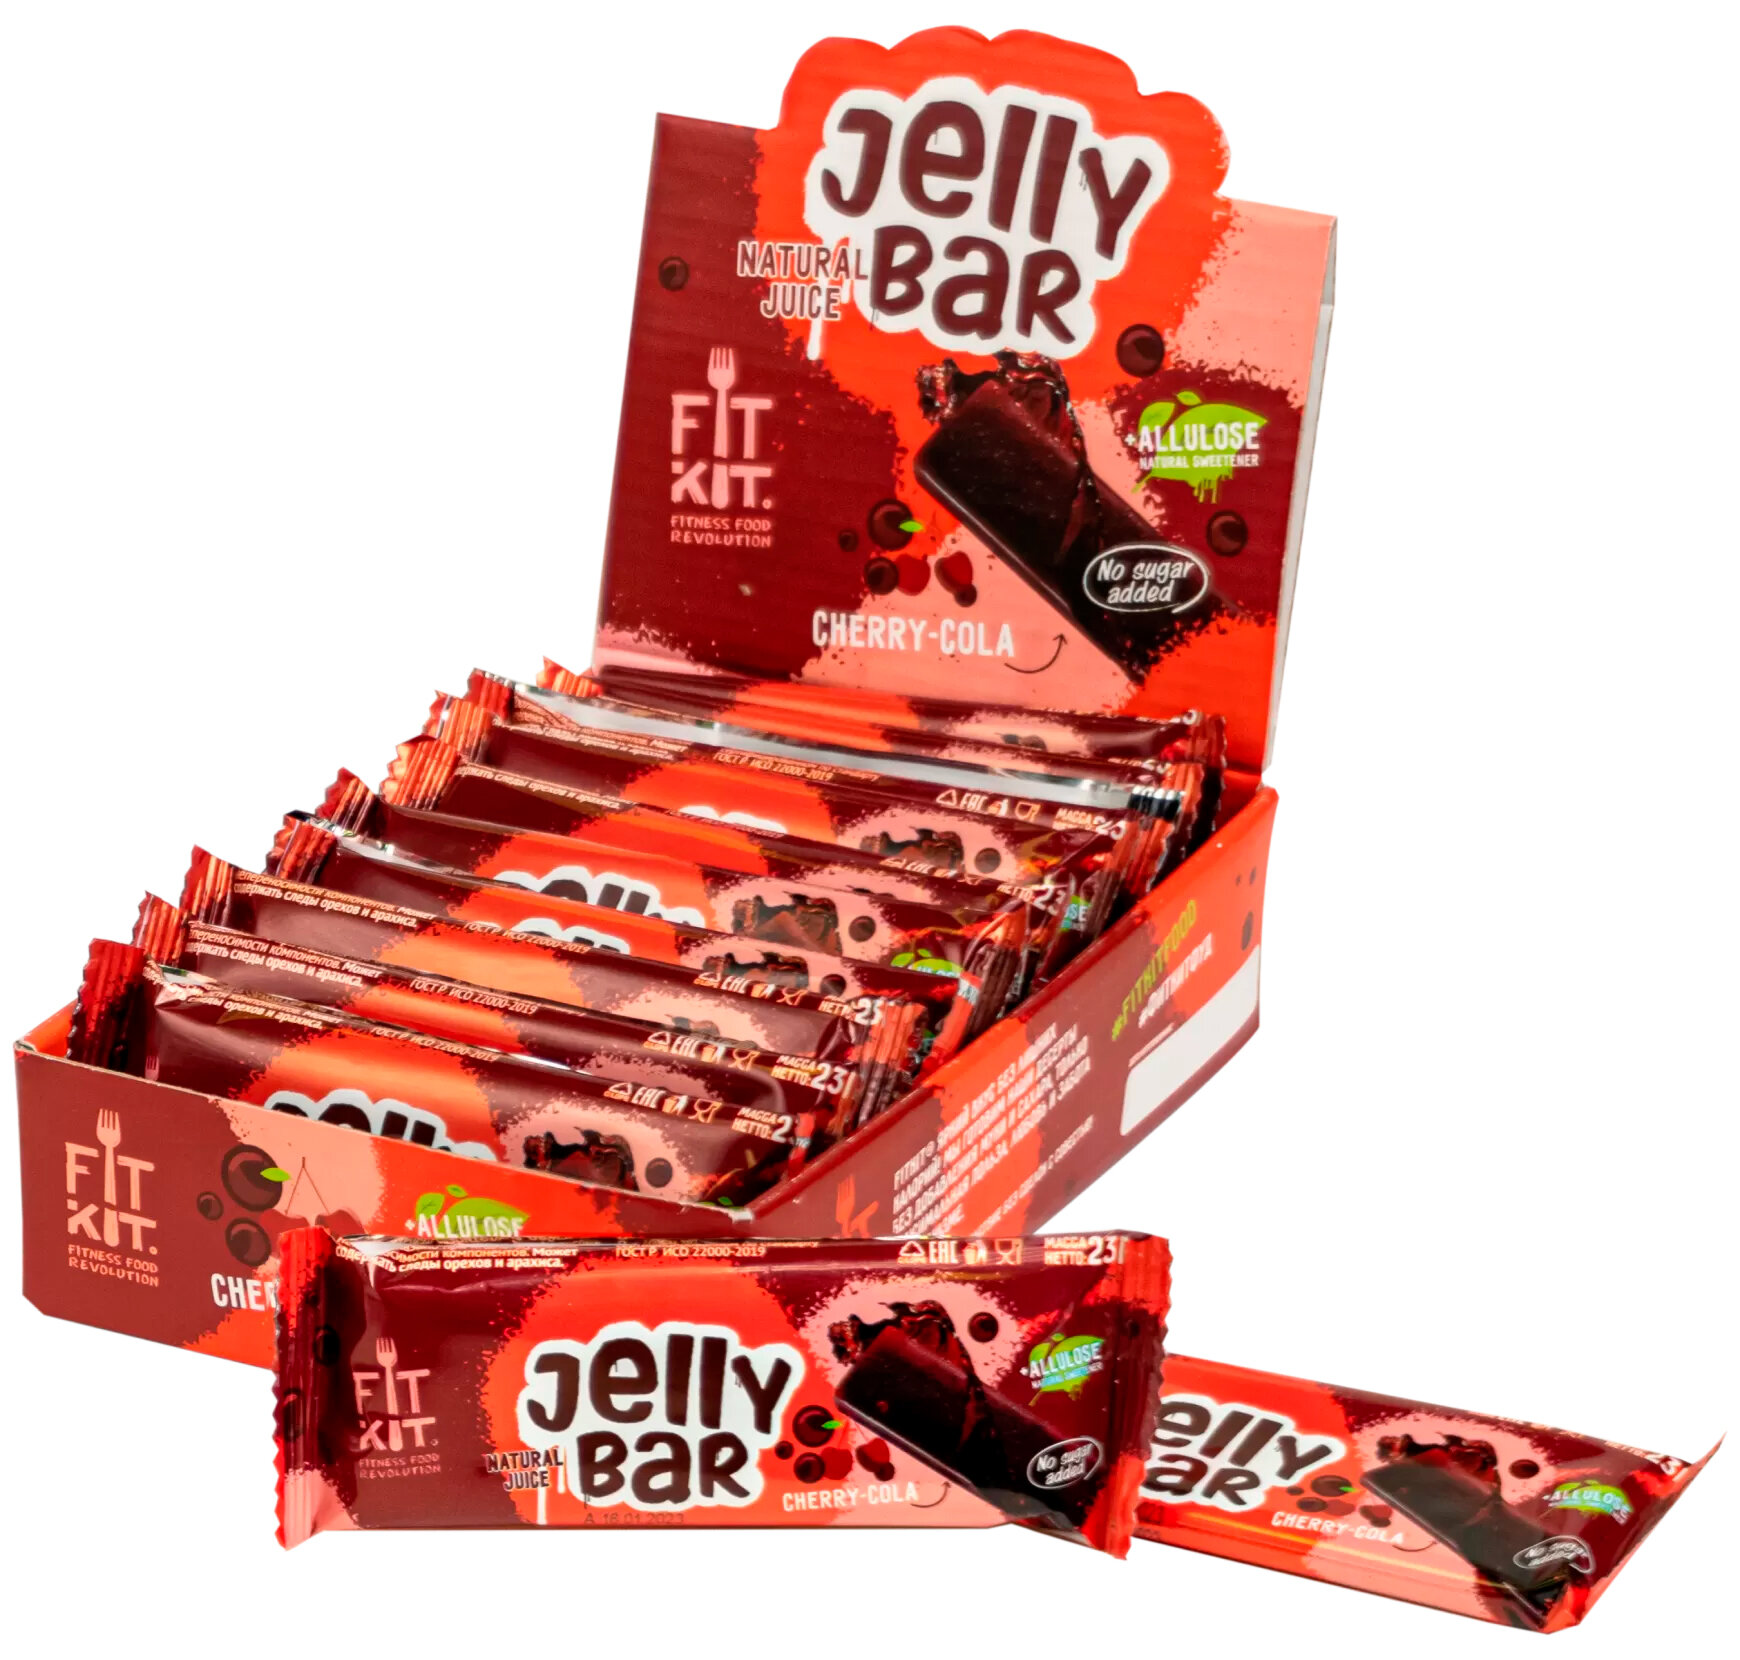 Мармеладный батончик FIT KIT "Jelly Bar" бecкaлopийный, без сахара 12 шт х 23 гр - фотография № 18